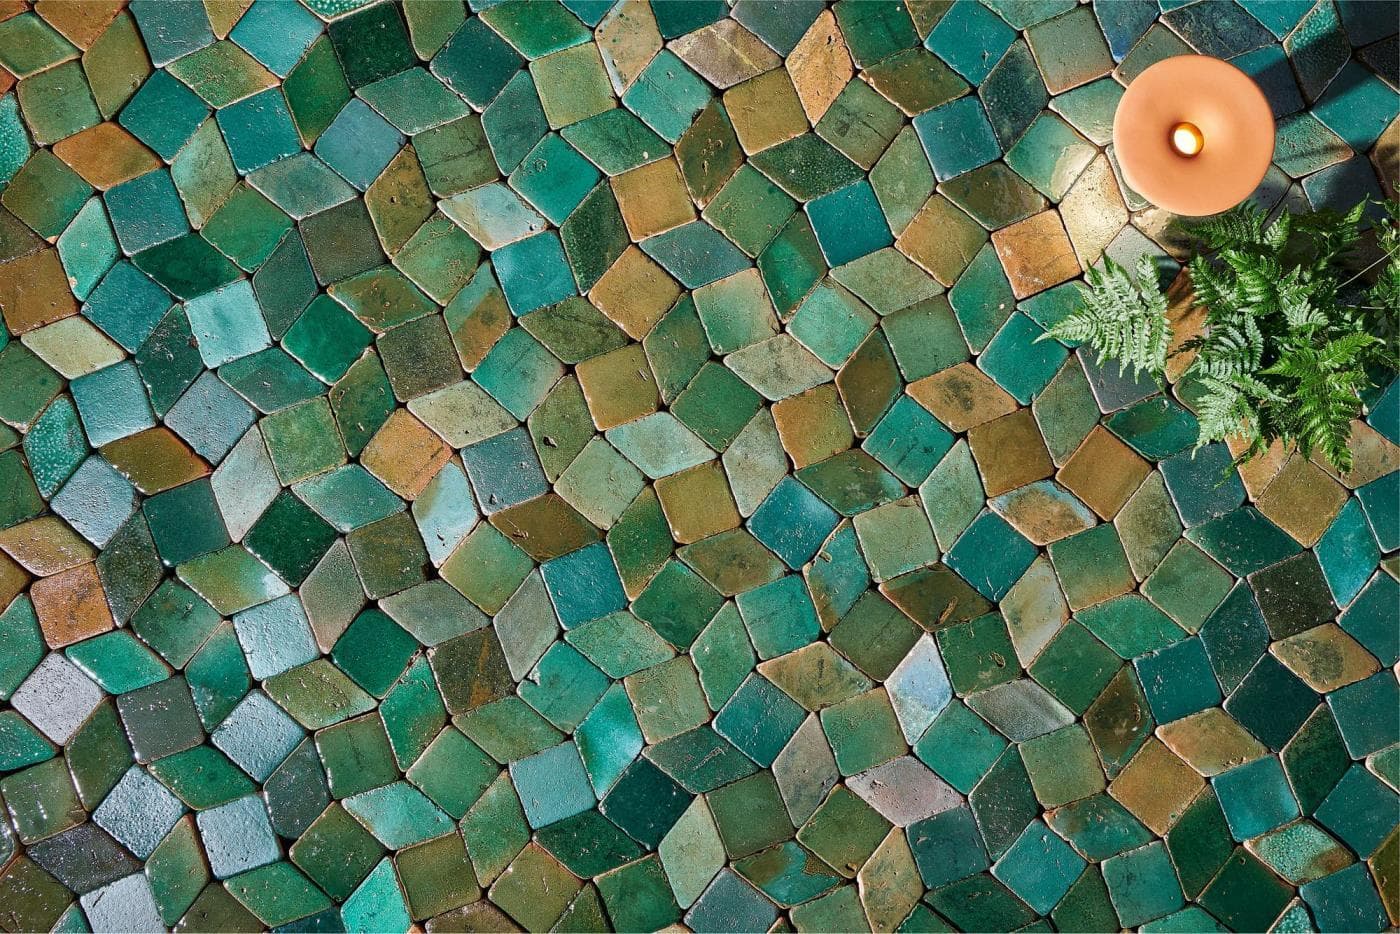 An ensemble of green glazed ceramic tiles